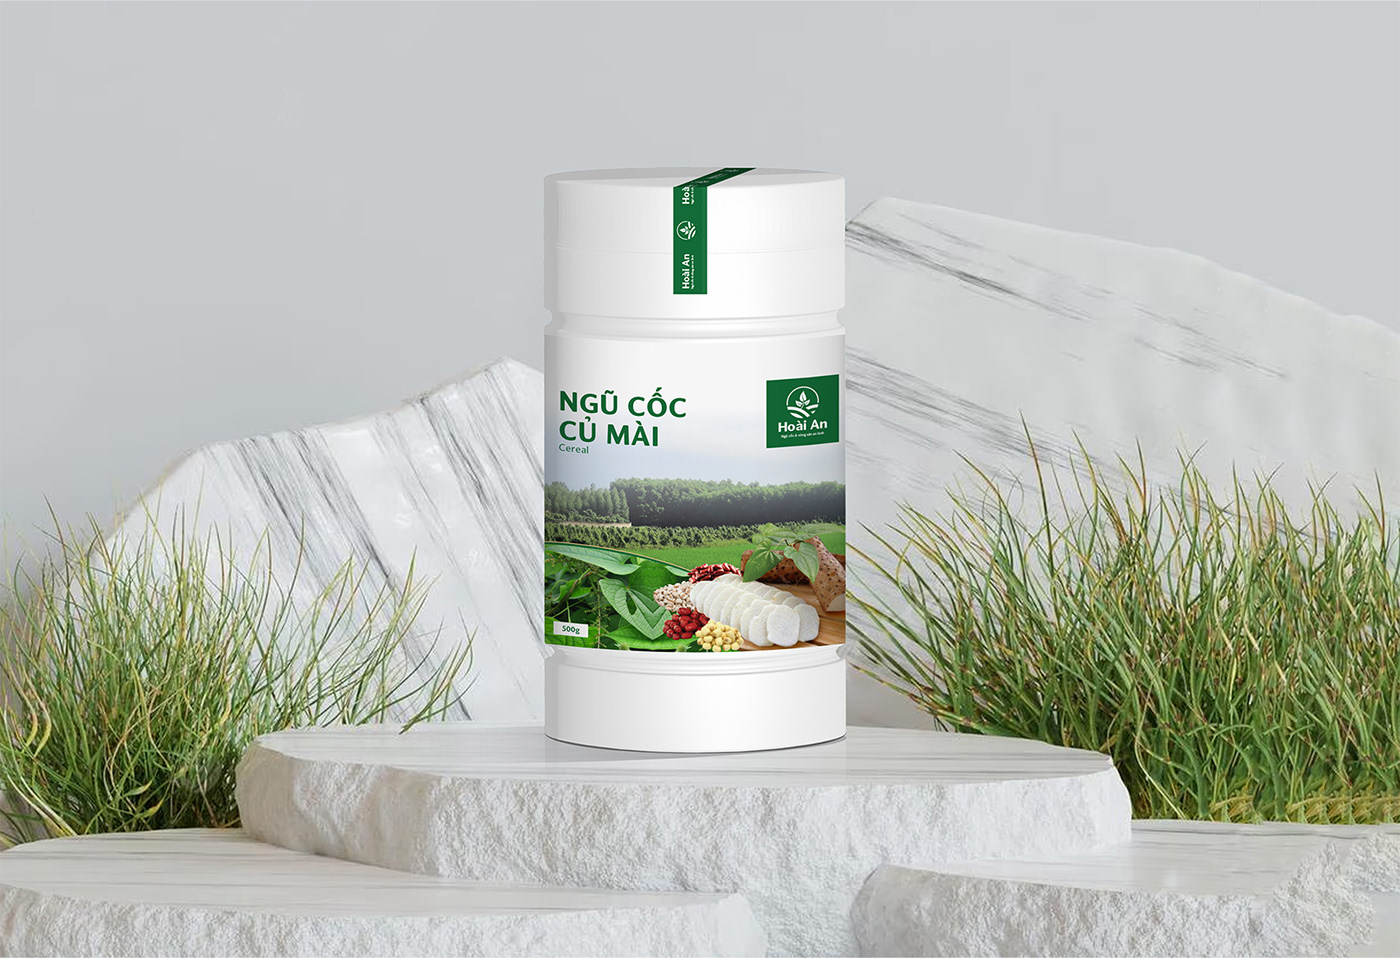 Thiết kế bao bì hộp ngũ cốc củ mài | Wild yam packaging design